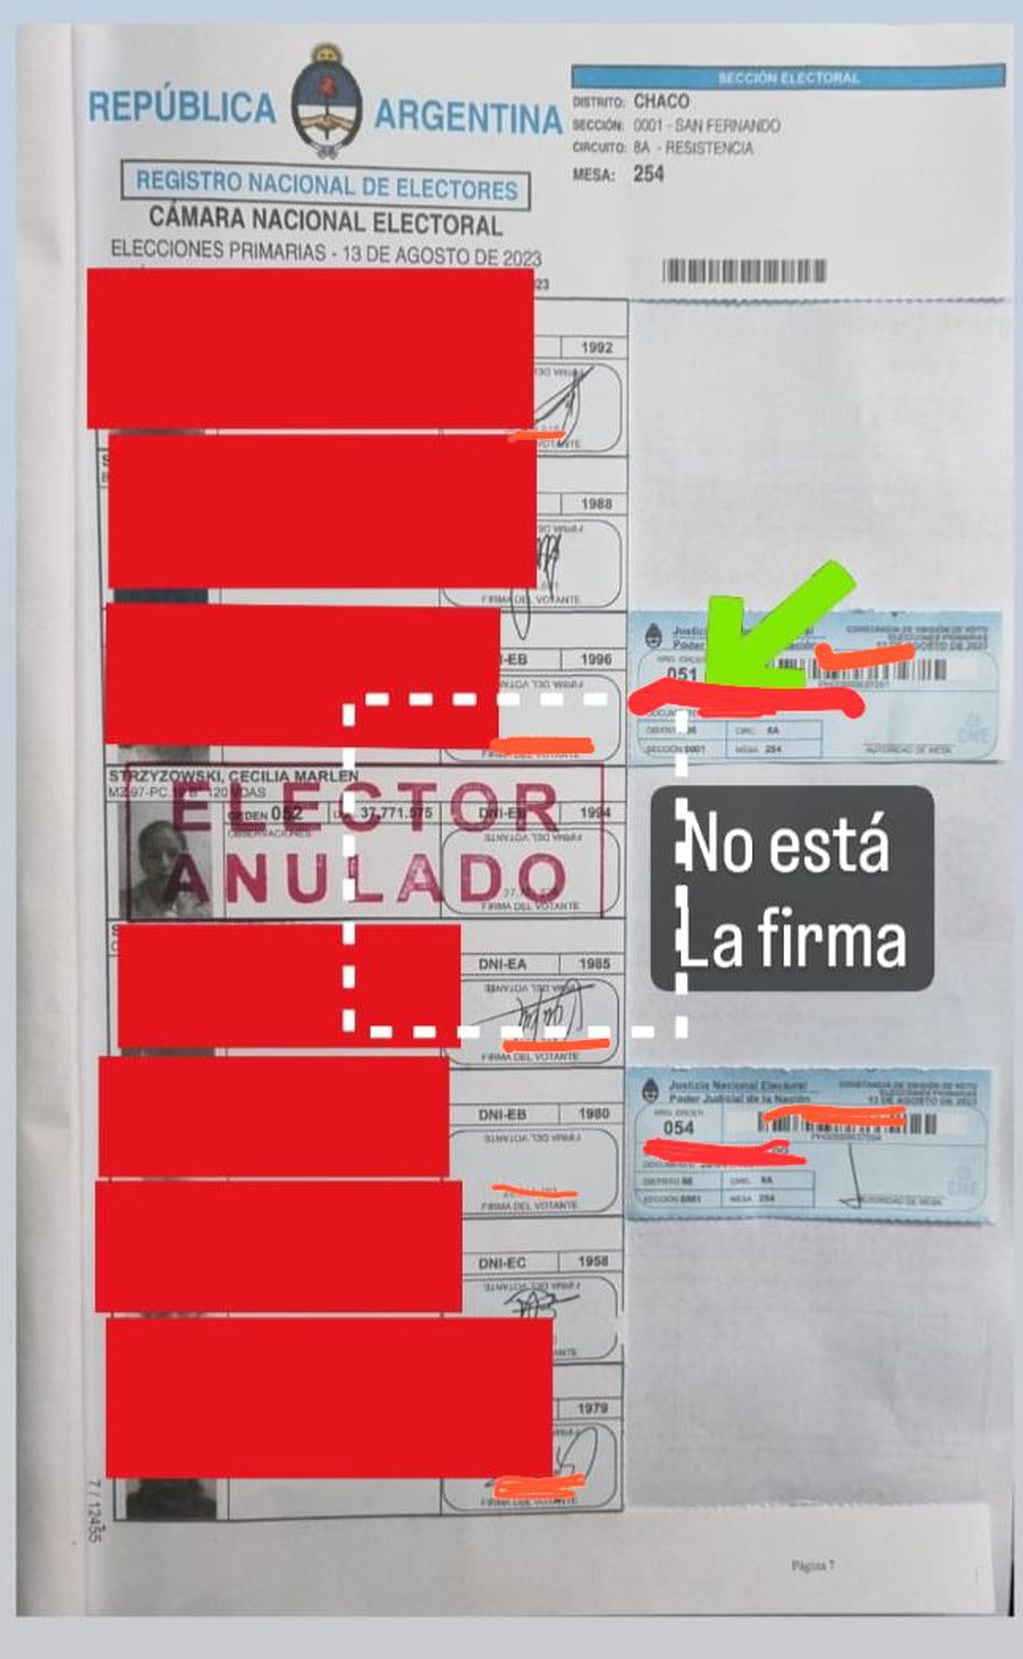 De esta manera figura el padrón físico utilizado en Chaco para las elecciones PASO nacionales de agosto.